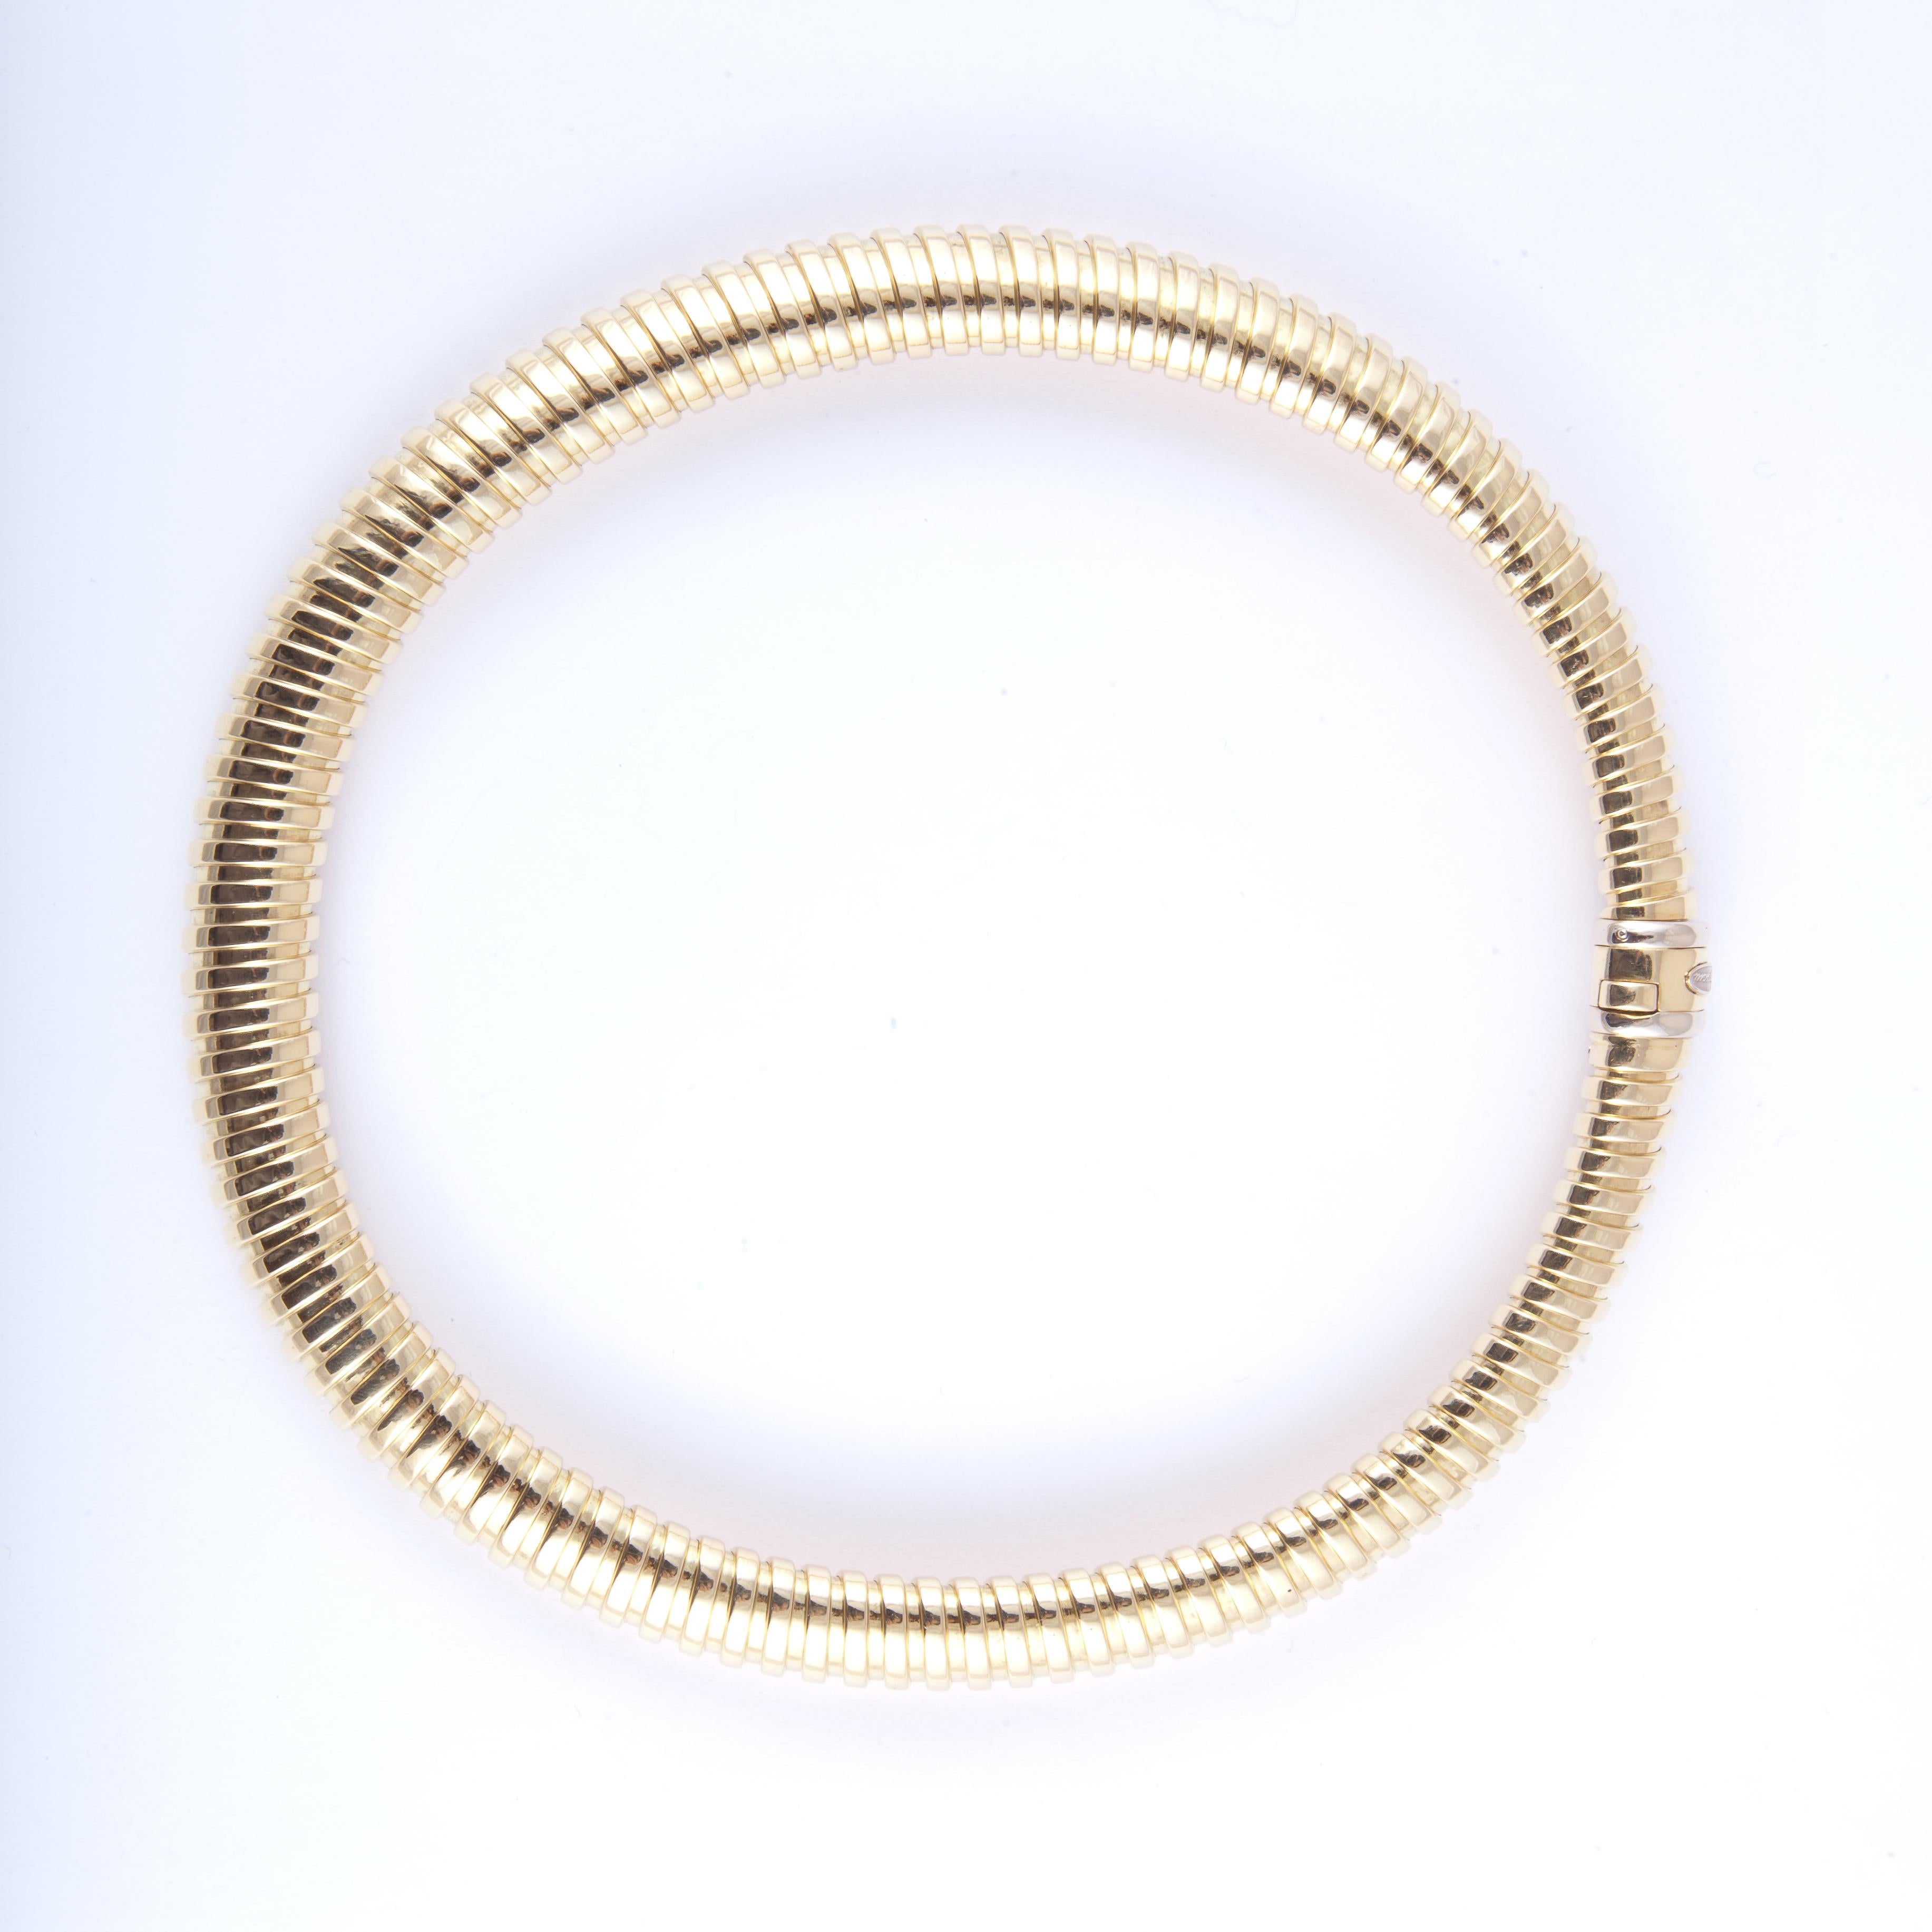 Bersoni-Halskette im Tubogas-Stil aus 18 Karat Gelbgold mit einem Verschluss mit Zunge.  Die Halskette ist 19 Zoll lang und 1/2 Zoll breit.  Halskette hat sehr schönes Gewicht und liegt gut am Hals.